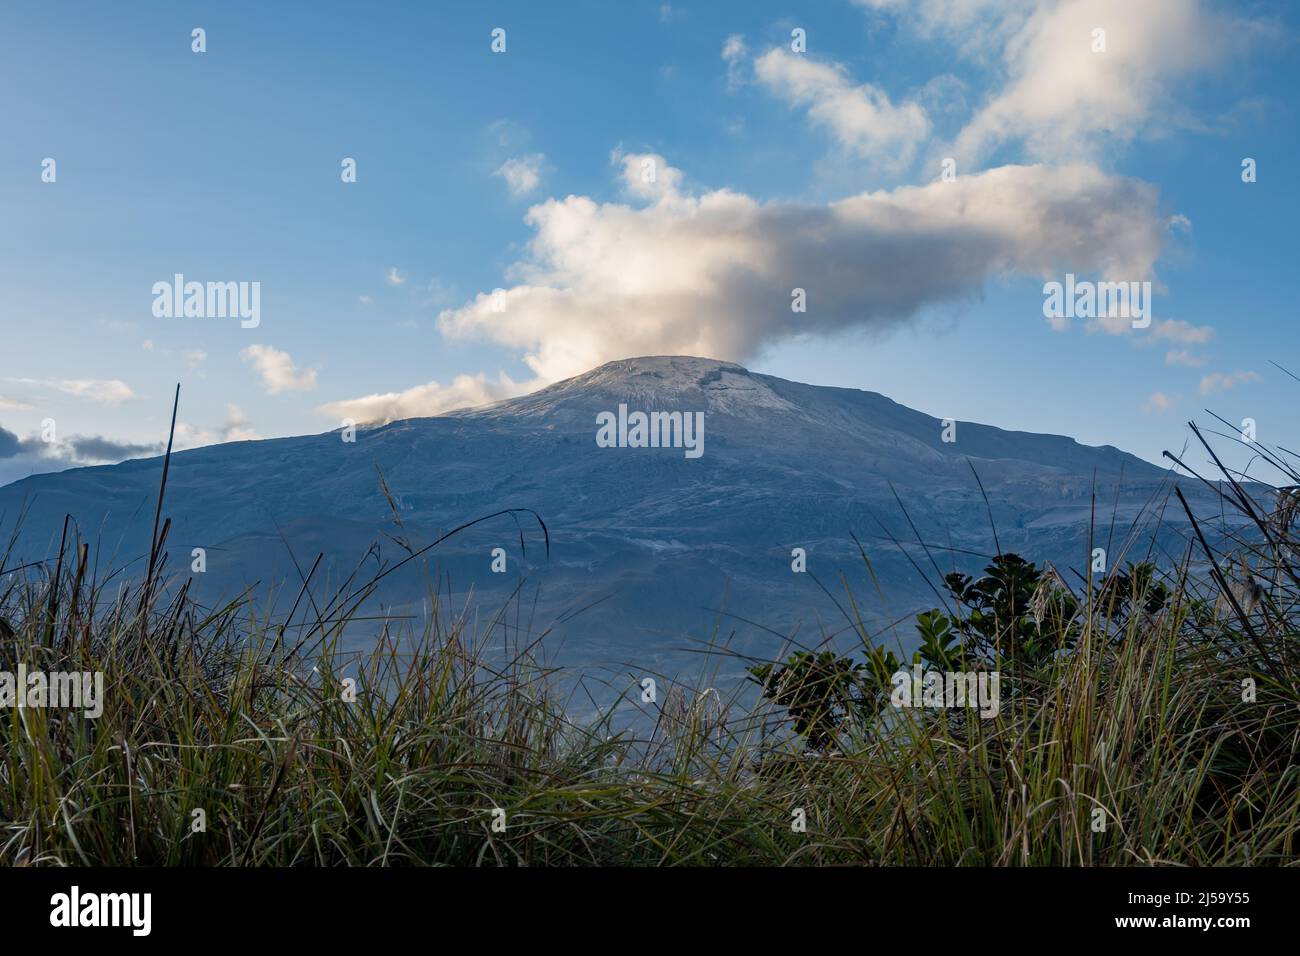 Il fumo e il vapore sorgono dal vulcano attivo Nevado del Ruiz nelle Ande centrali. Los Nevados National Park, Colombia, Sud America. Foto Stock